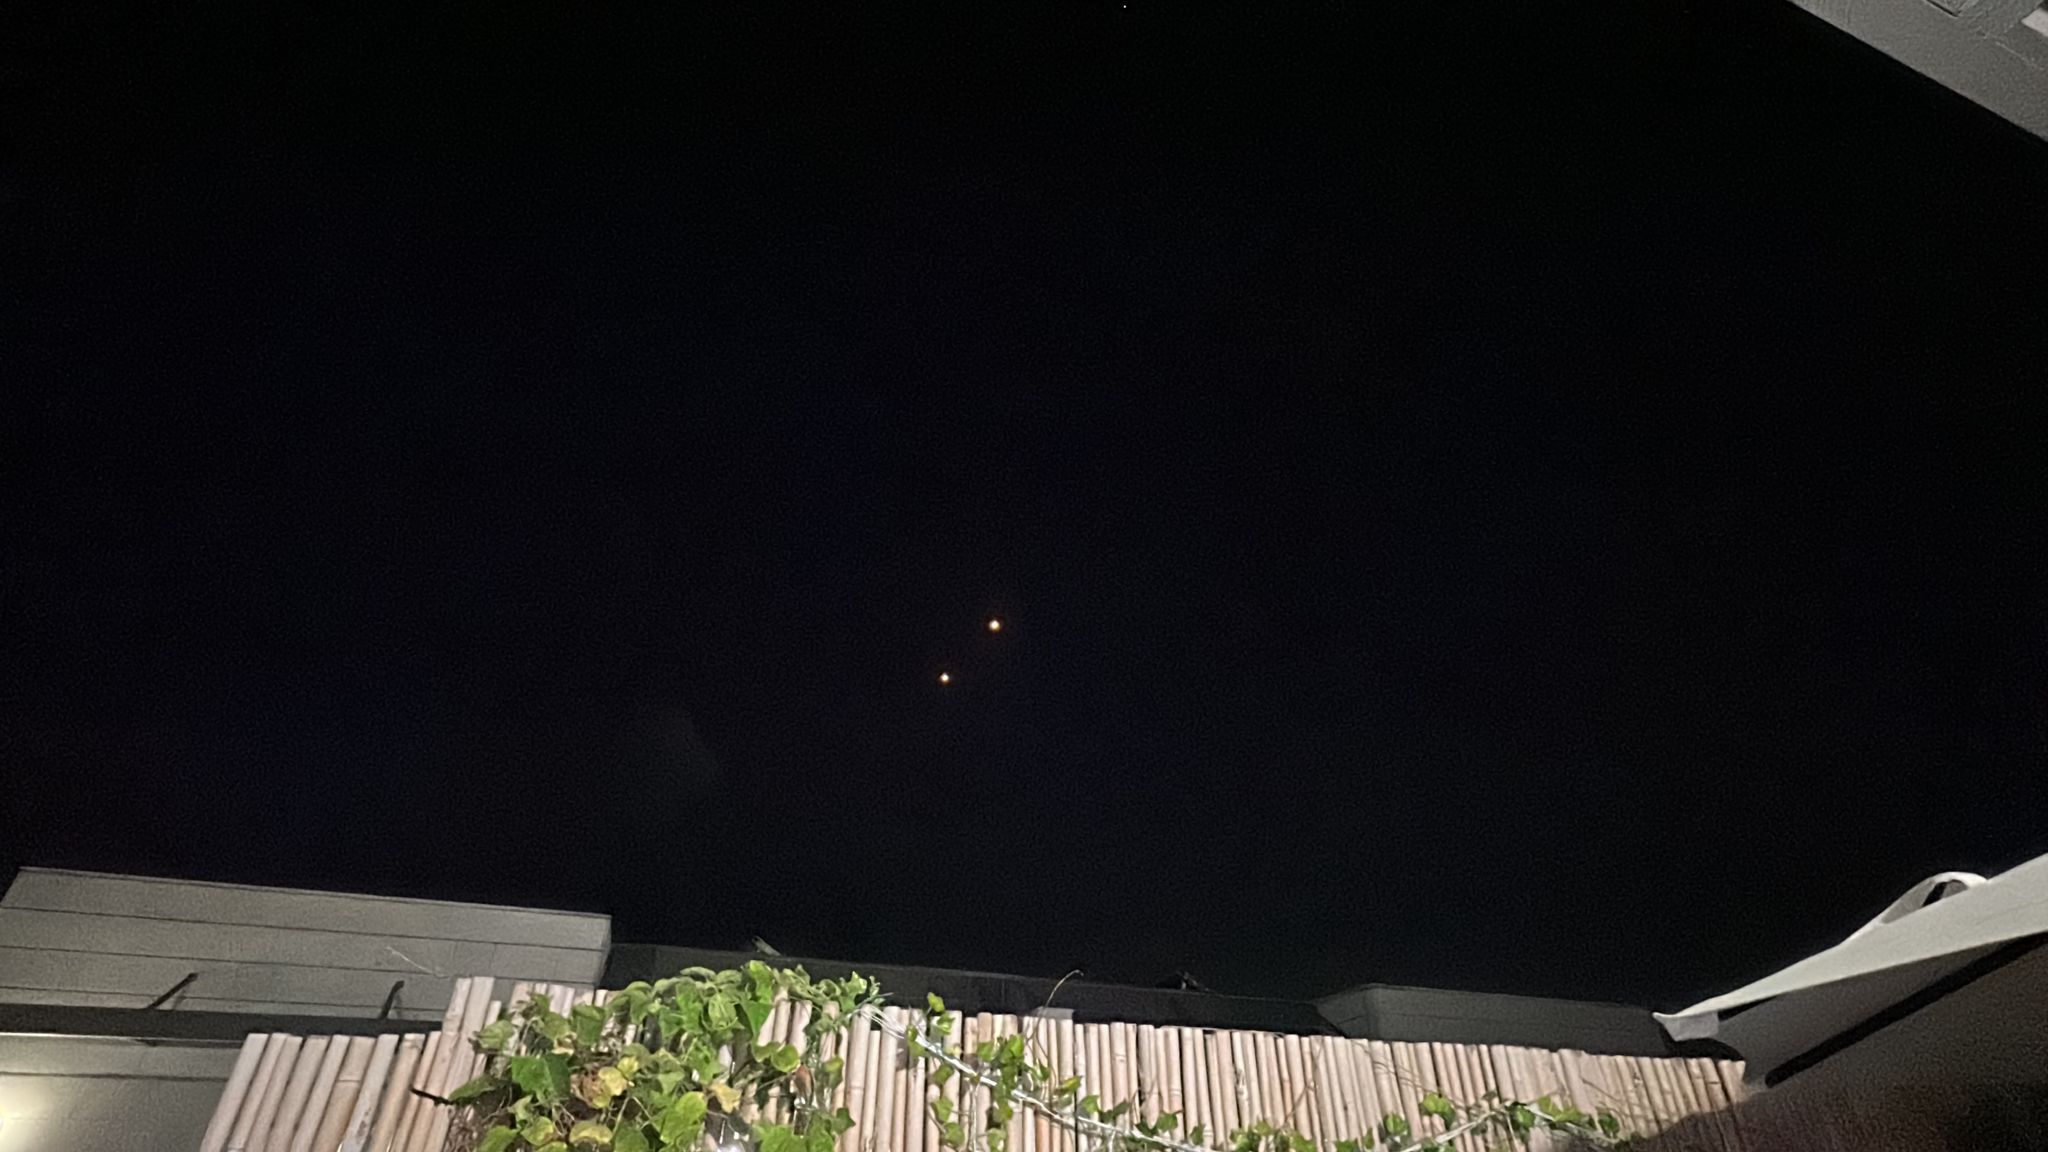 للمرة الثانية القبة الحديدية تعترض صواريخ قطاع غزة فوق سماء يافا 